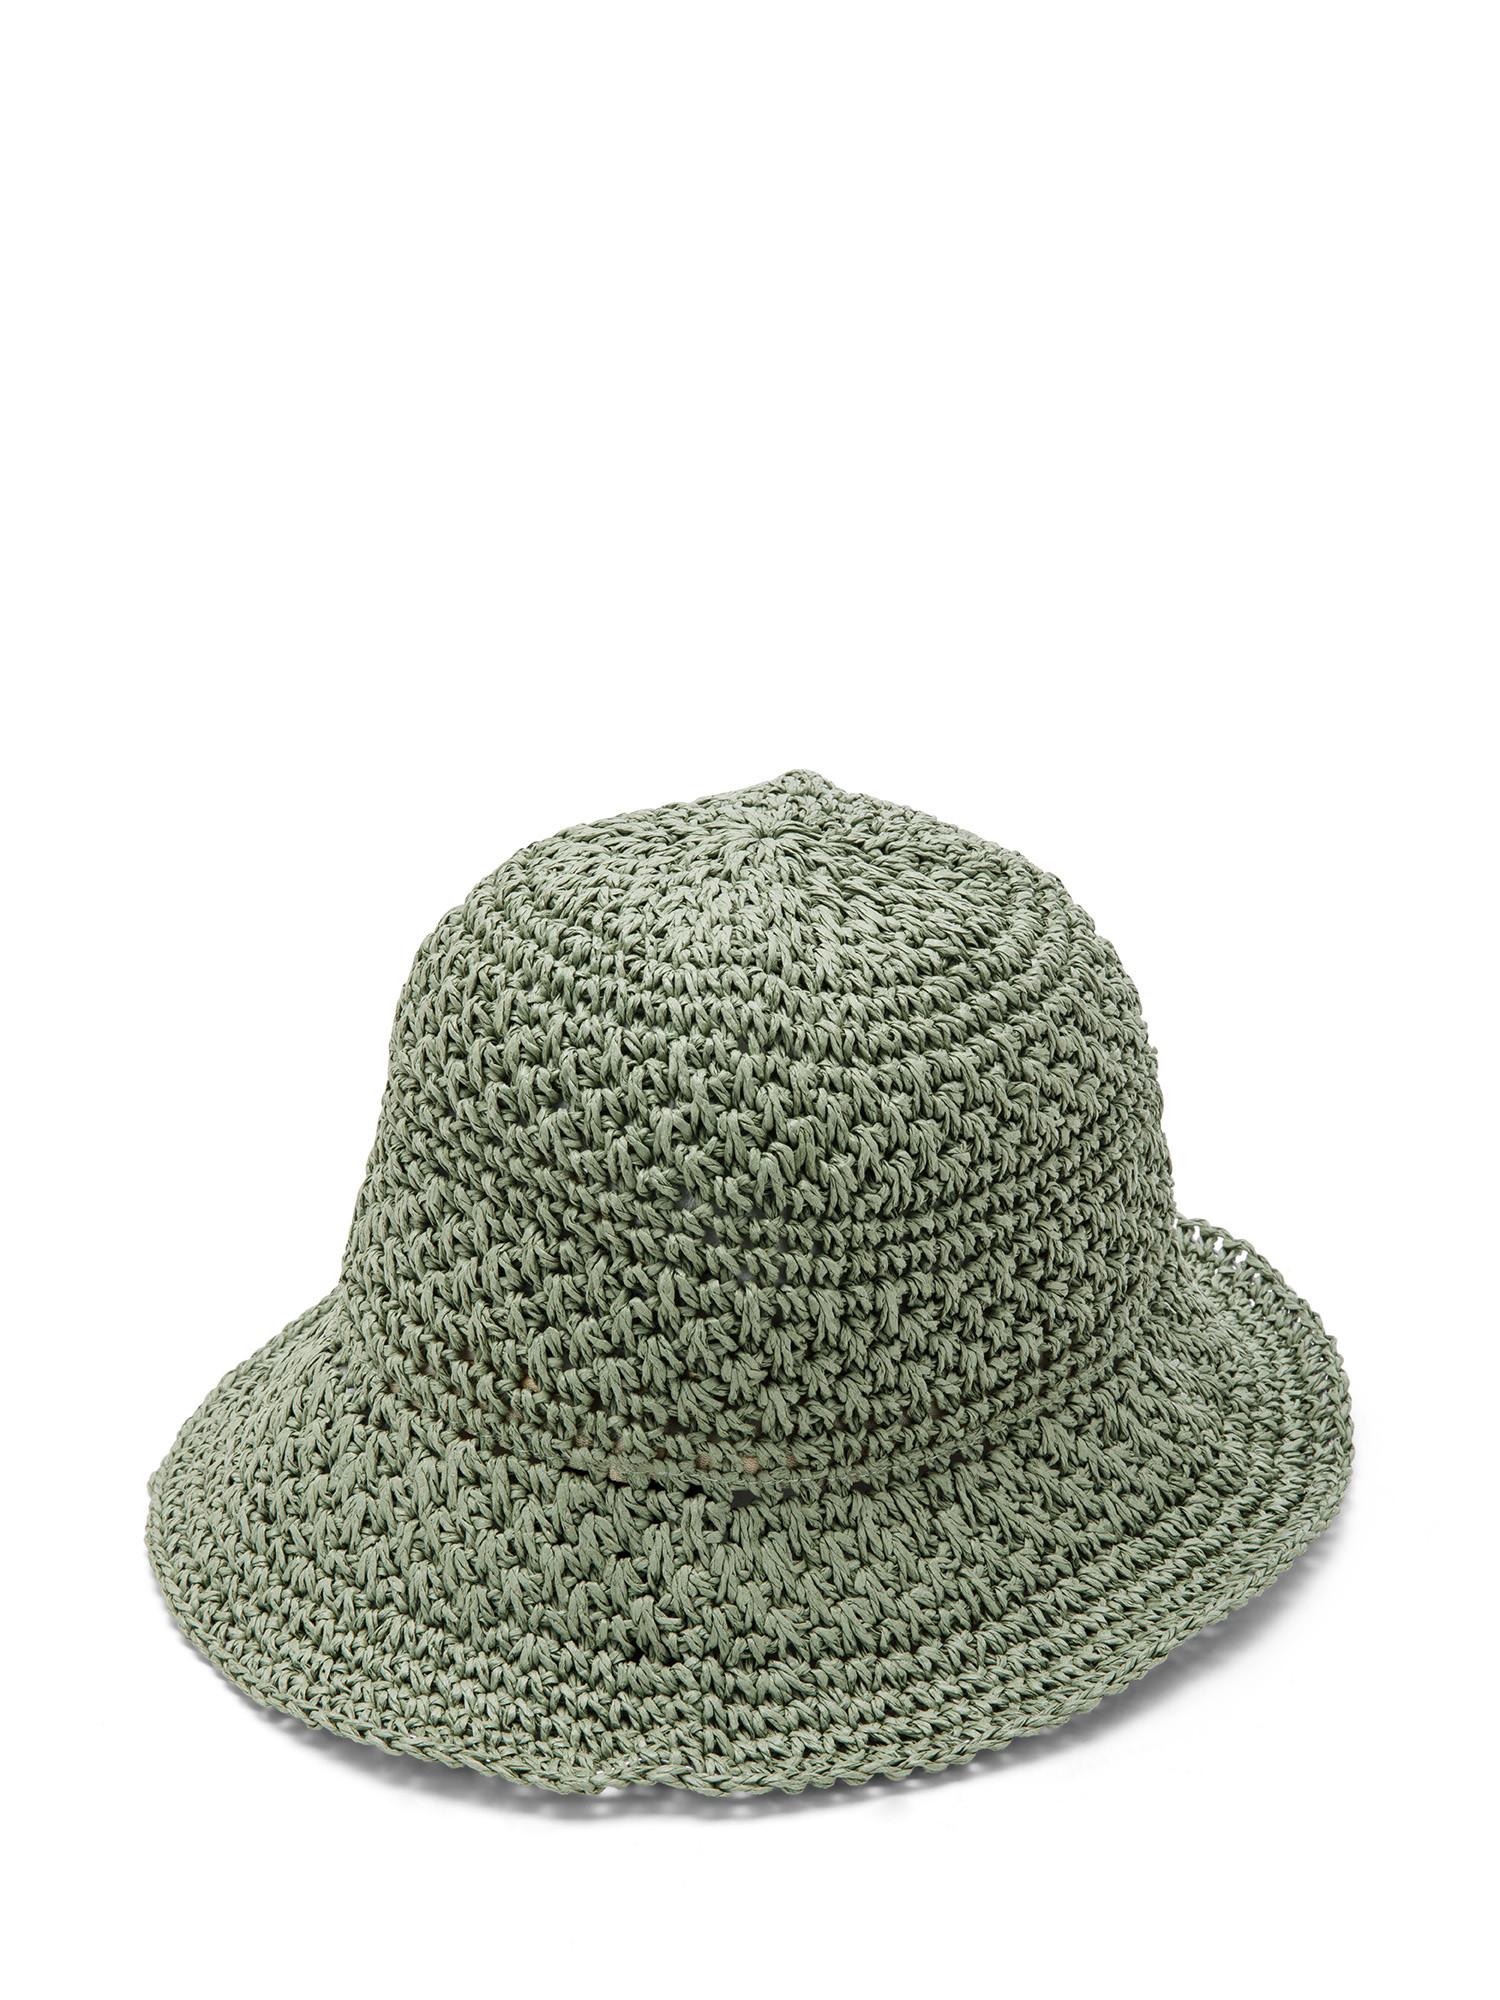 Koan - Cappello crochet, Verde oliva, large image number 0